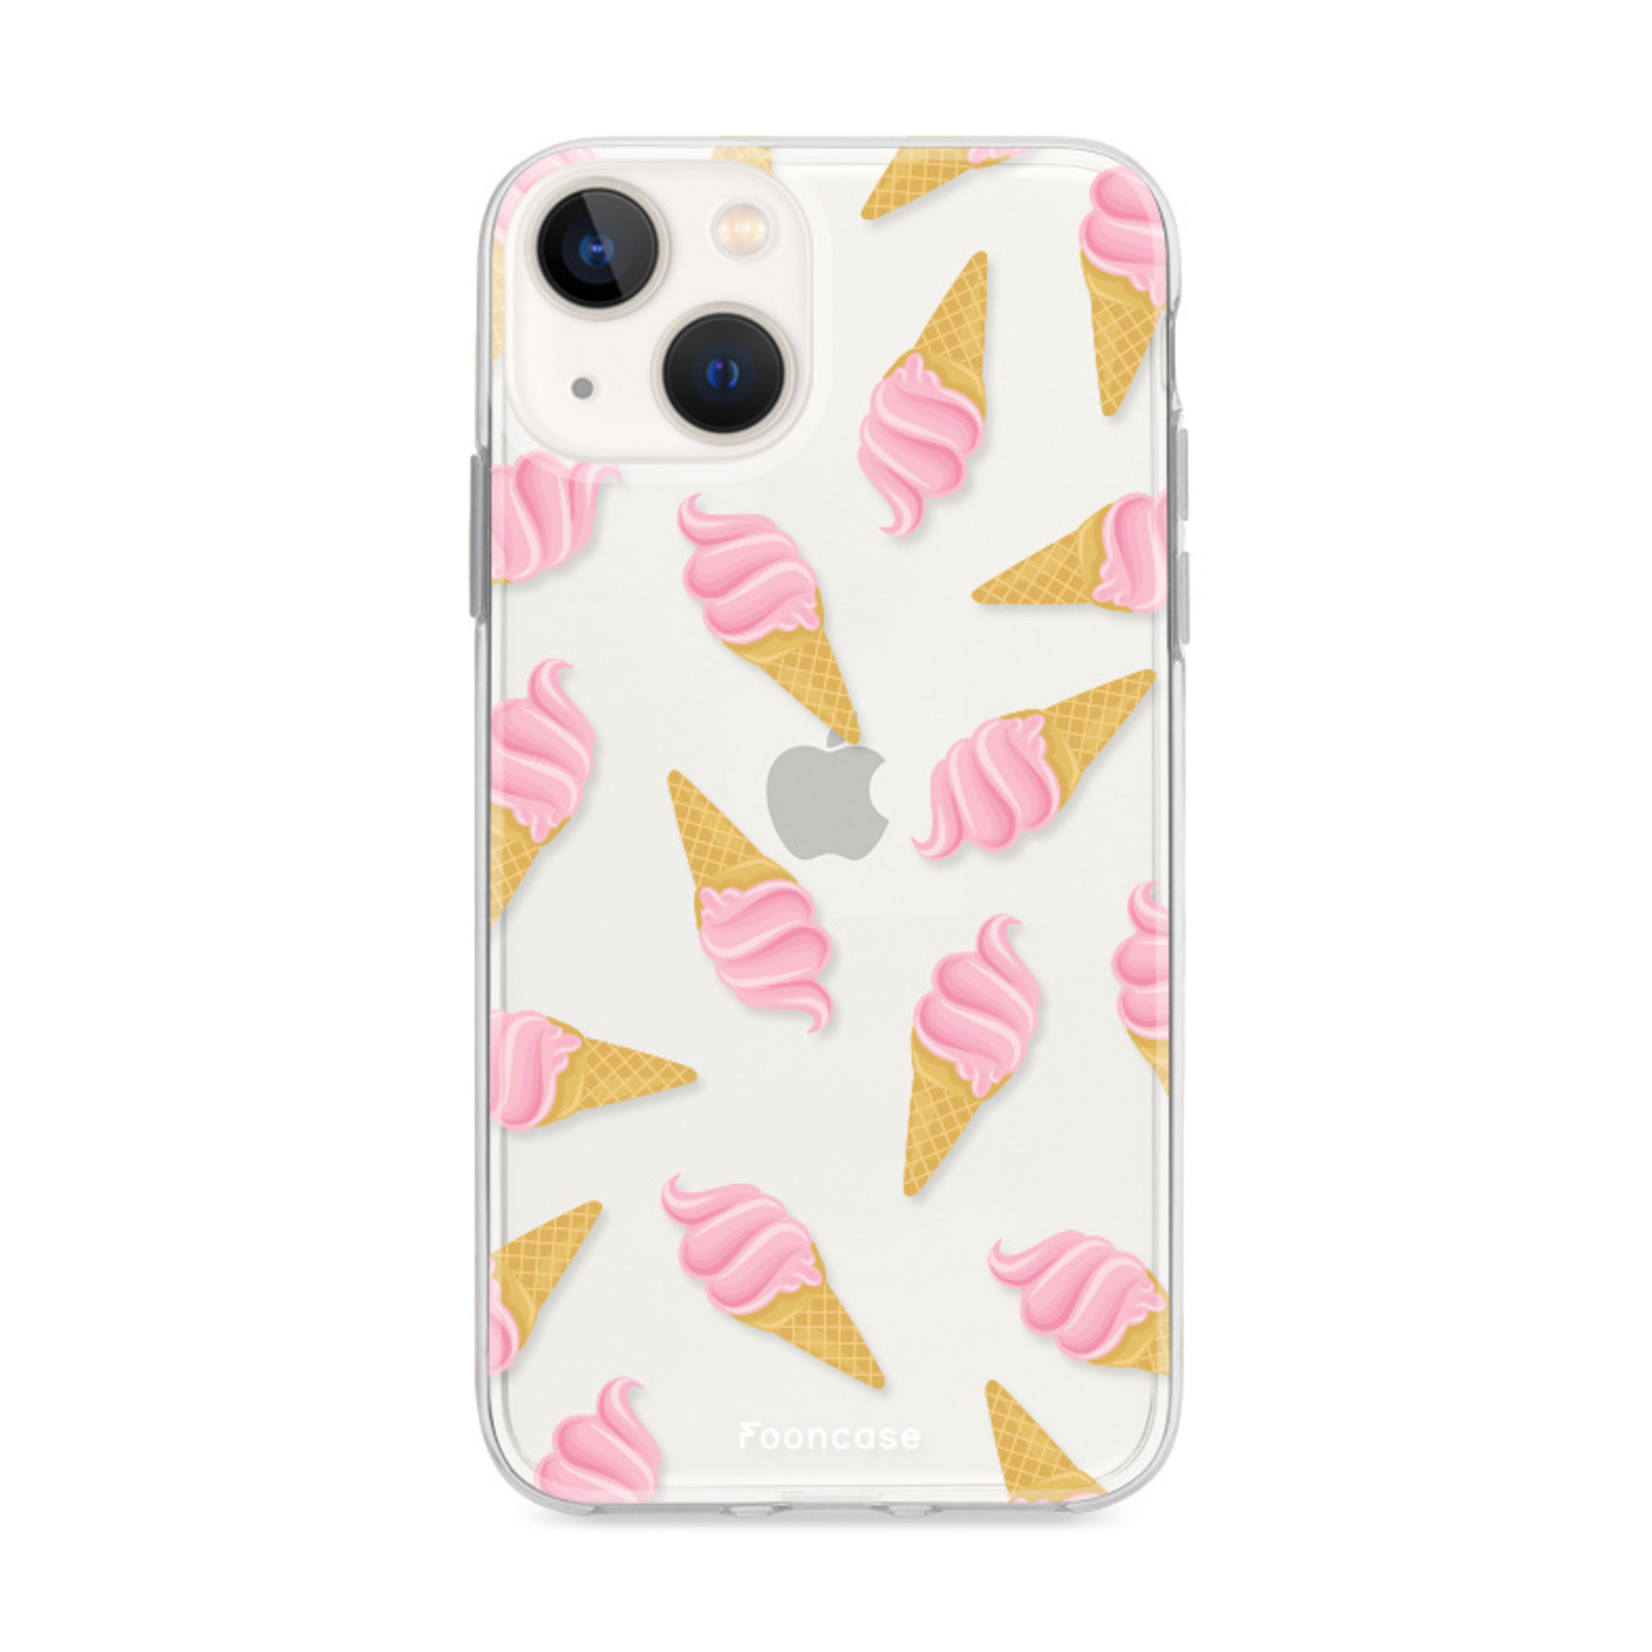 FOONCASE iPhone 13 hoesje TPU Soft Case - Back Cover - Ice Ice Baby / Ijsjes / Roze ijsjes